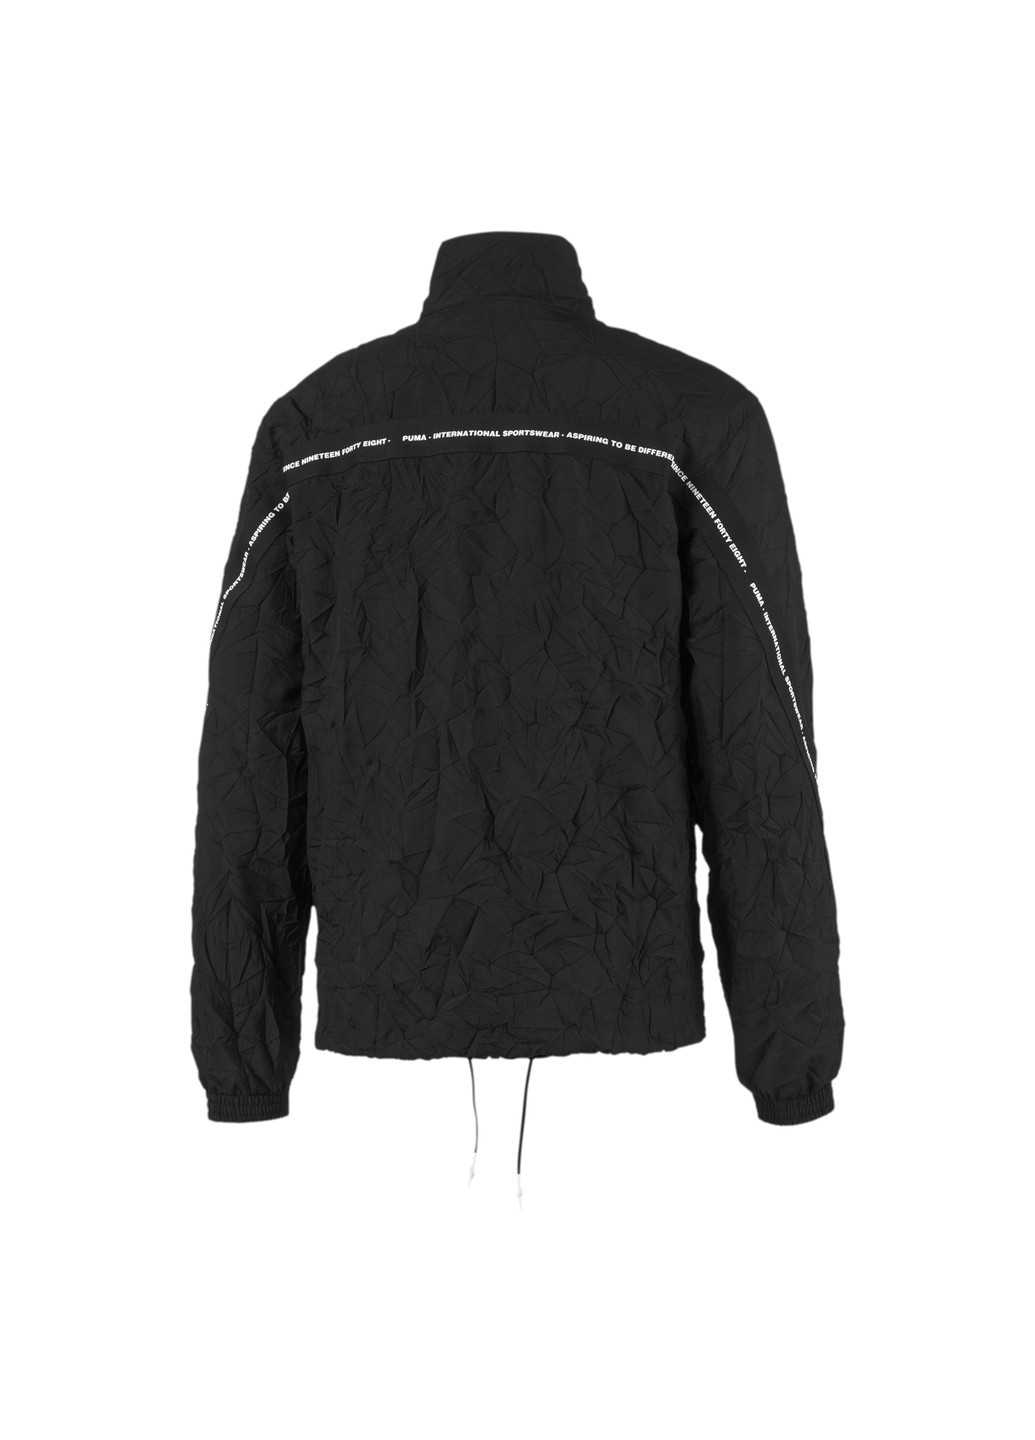 Черная демисезонная куртка Puma Avenir Woven Track Top